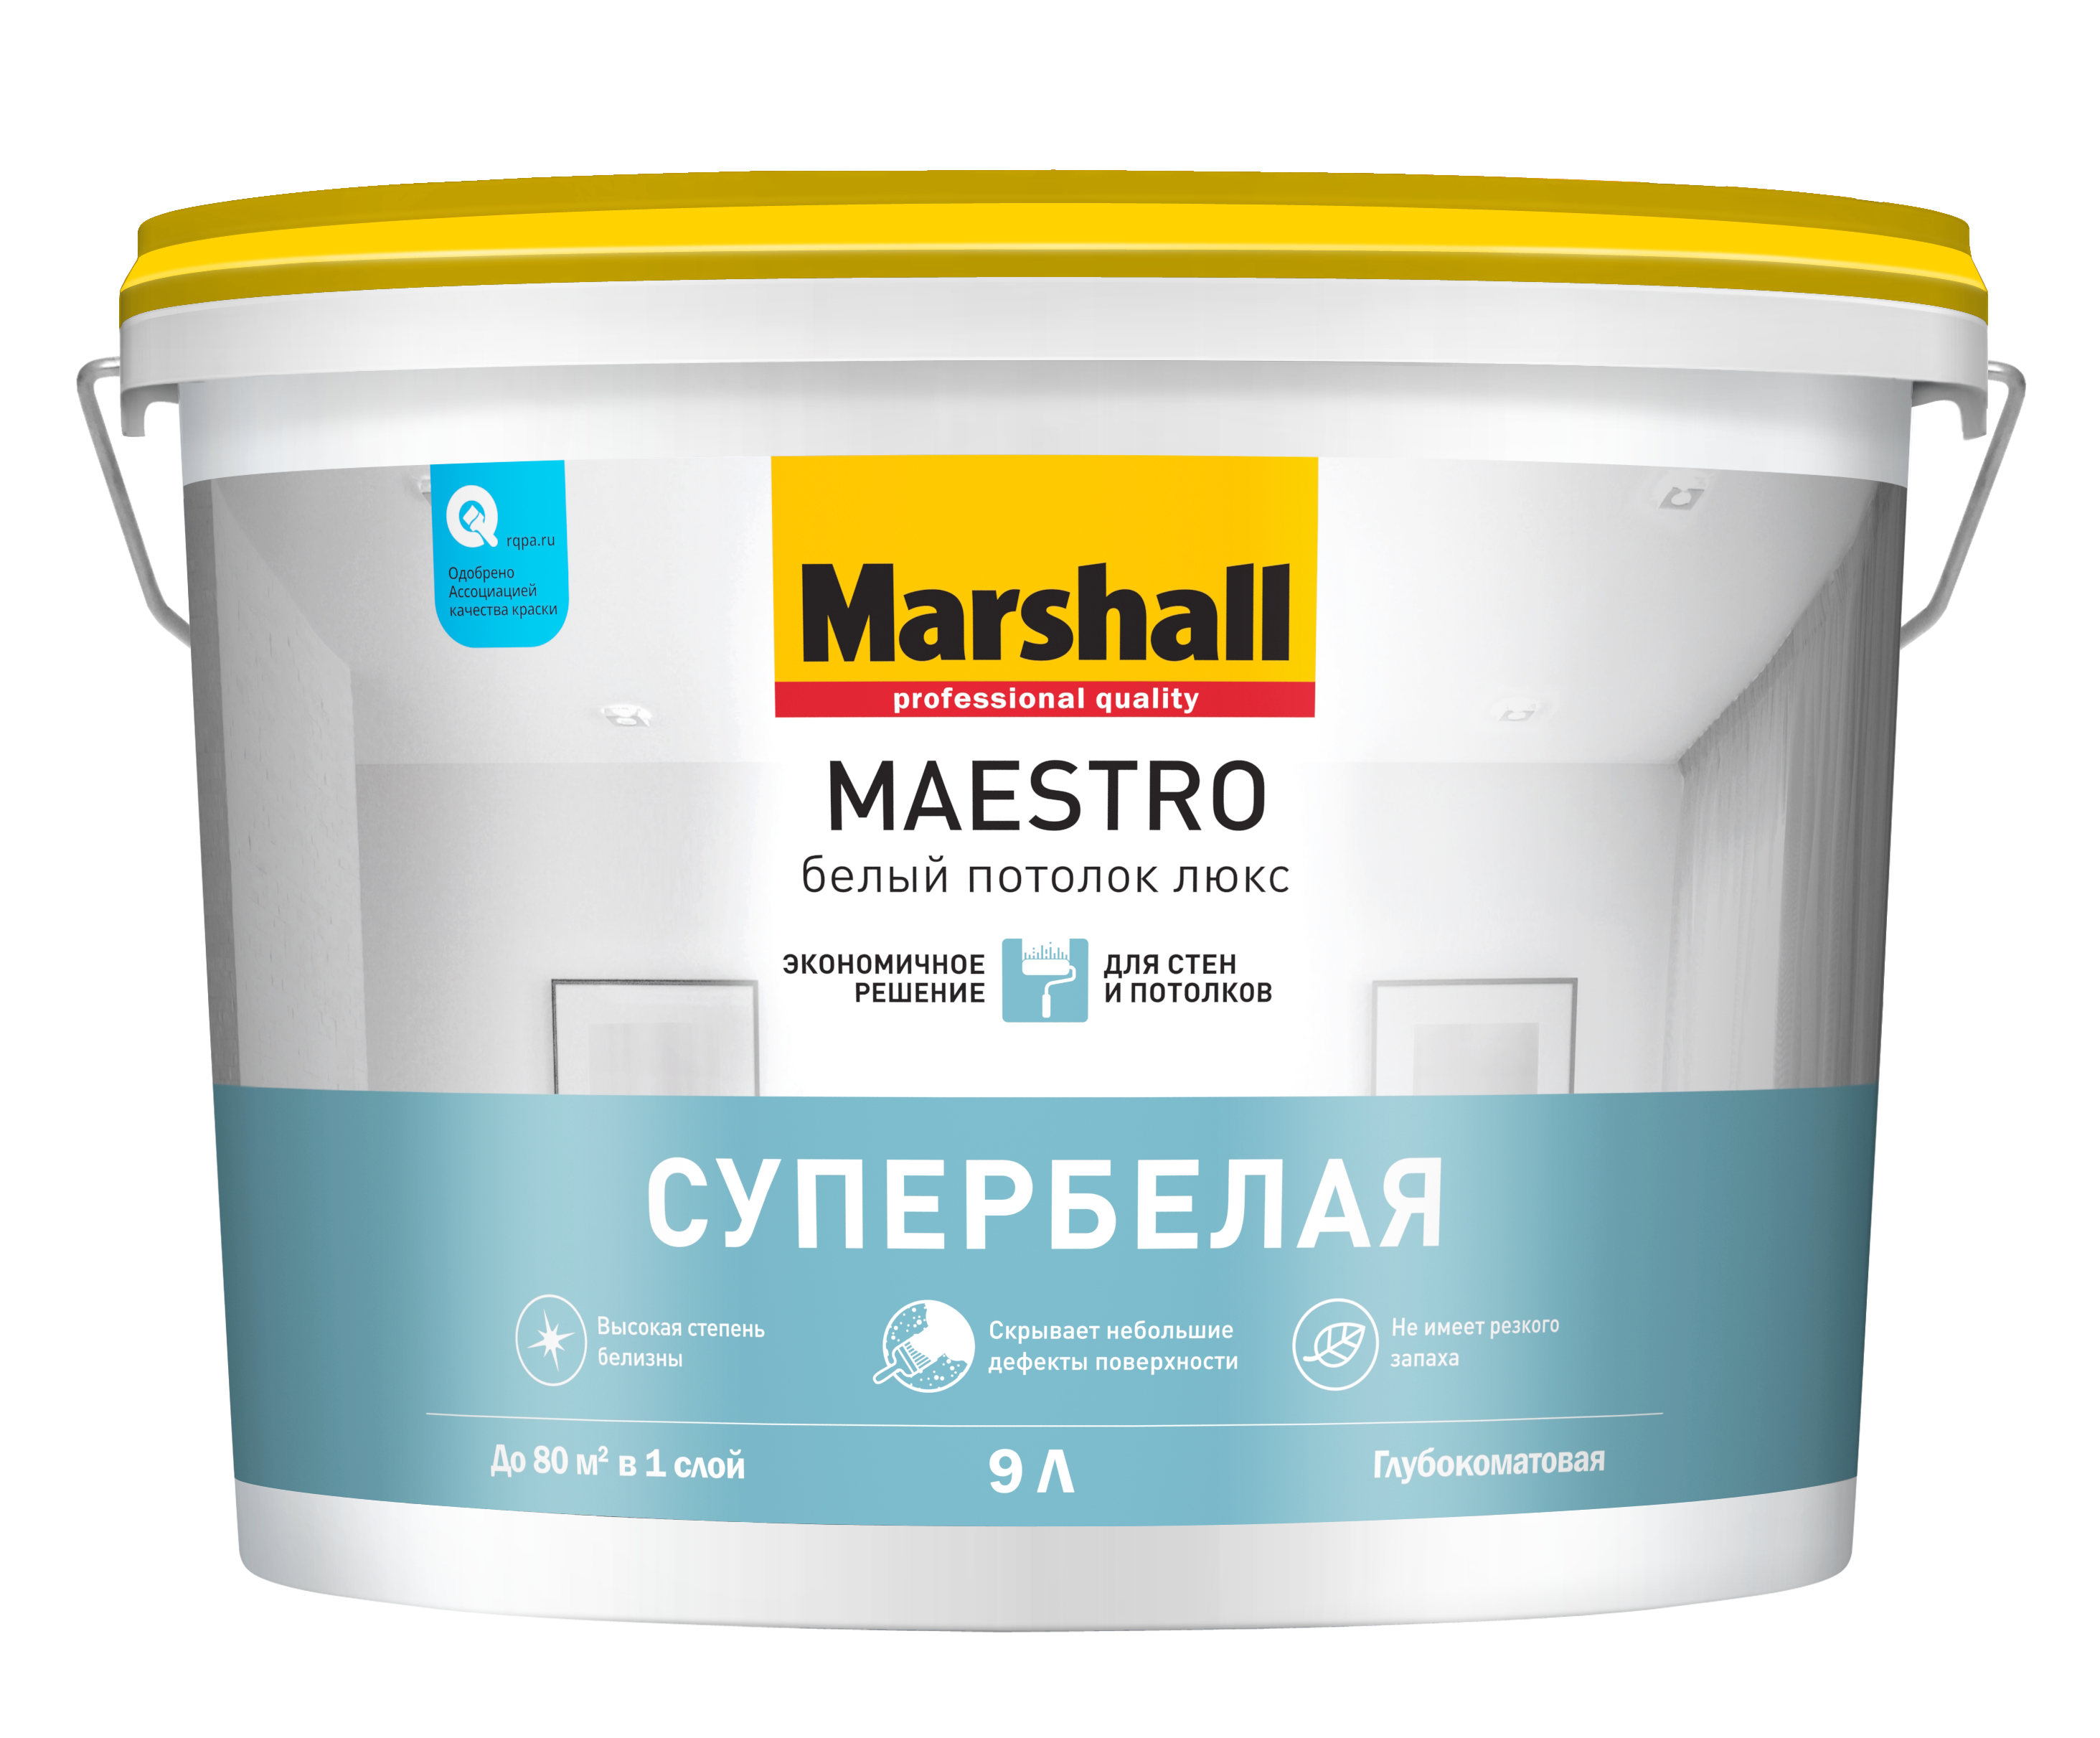 Краска Marshall Maestro / Маршал Маэстро Белый Потолок Люкс. Белоснежная глубокоматовая водно-дисперсионная краска для потолков.